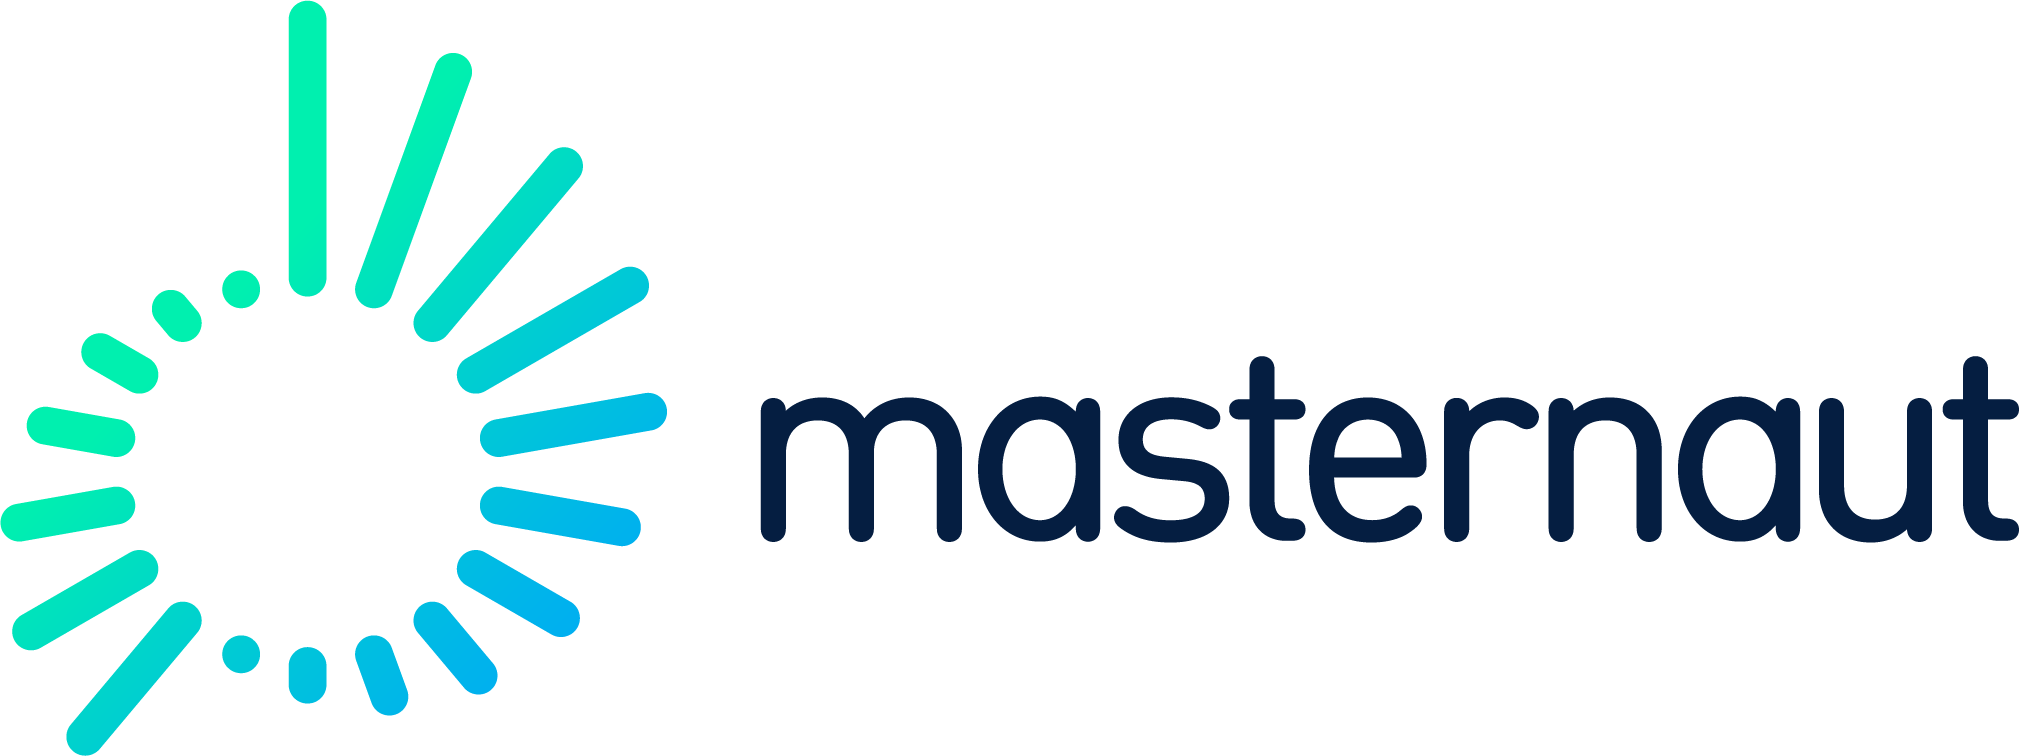 masternaut_logo_hor_rgb.png